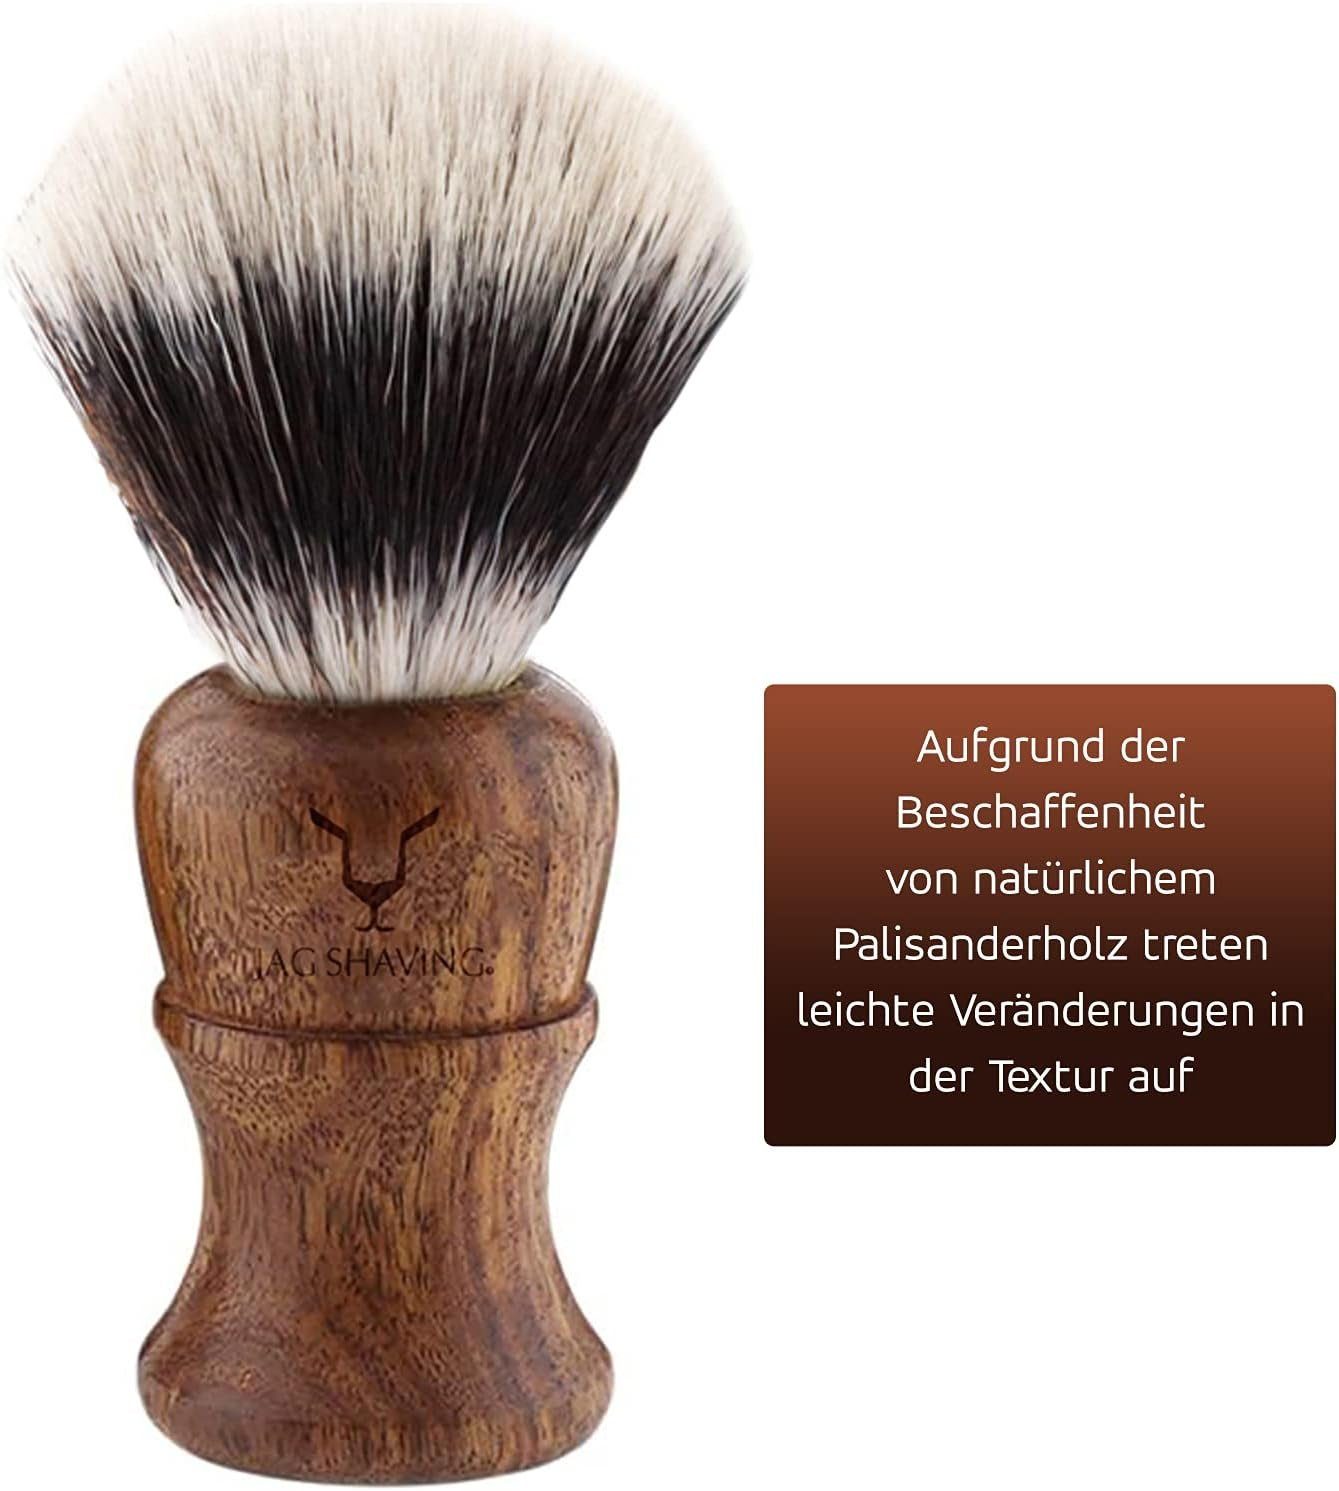 JAG SHAVING Rasierpinsel-Set Silver Tip Wooden tlg. 4-Piece Synthetic Brush, Shaving 4 – Hair Shaving Set